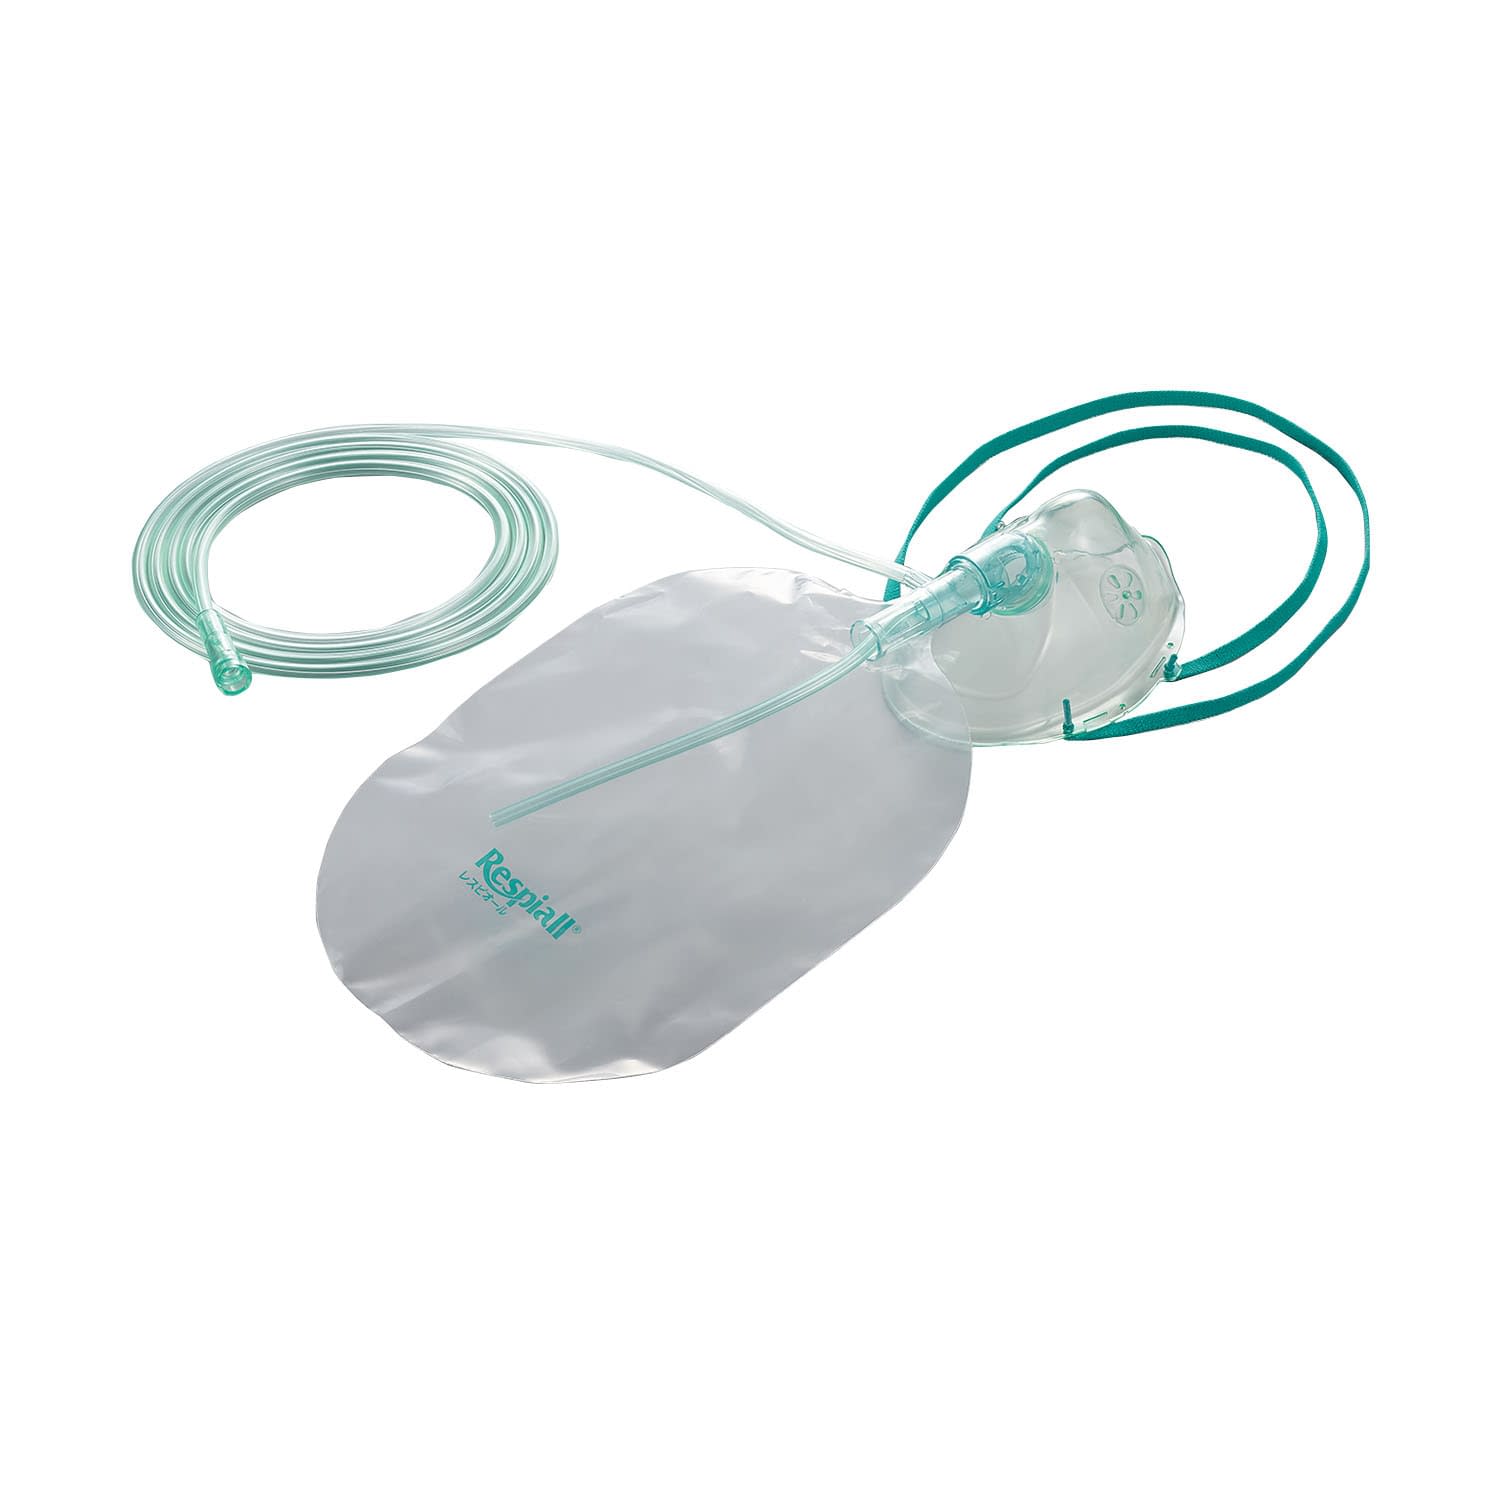 (24-3245-01)酸素フェースマスク（リザーババッグ付 36521(Mﾛﾝｸﾞ)10ｲﾘ ｻﾝｿﾌｪｰｽﾏｽｸﾘｻﾞｰﾊﾞﾊﾞｯｸ(アトムメディカル)【1箱単位】【2019年カタログ商品】